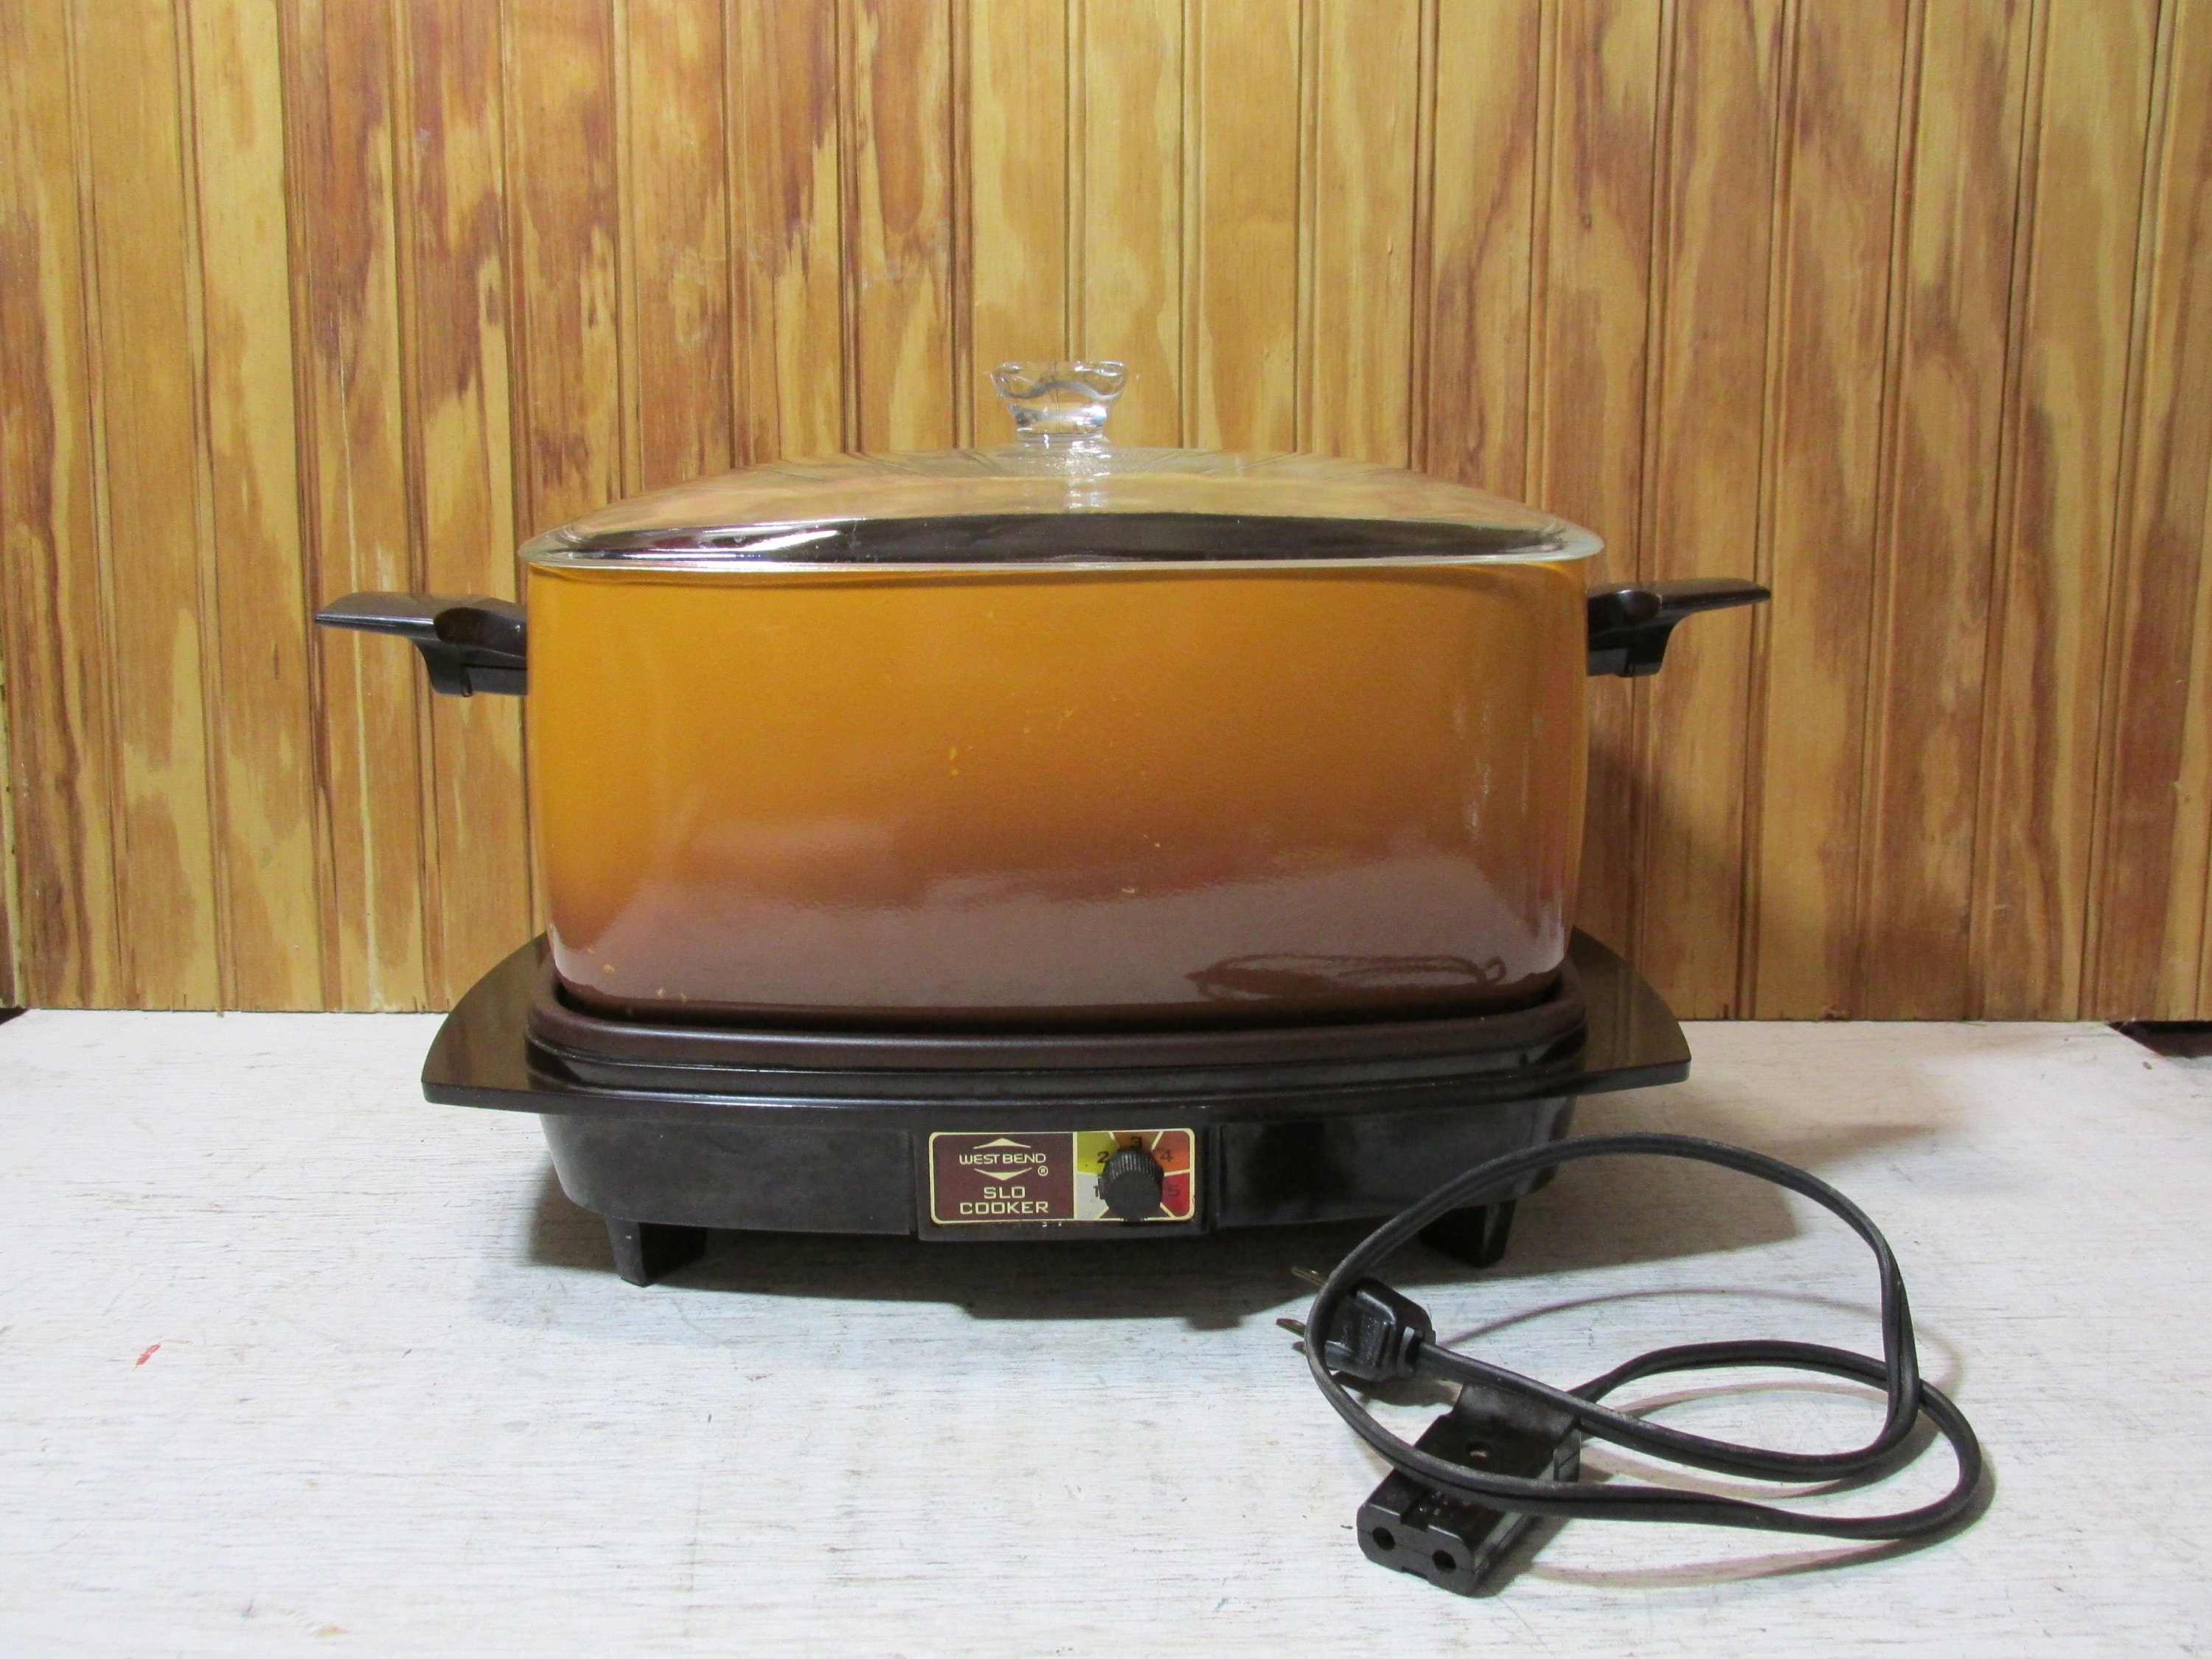 Vintage West Bend 6 Qt Slow Cooker Rectangle Crock Pot Orange Brown Tested  Retro